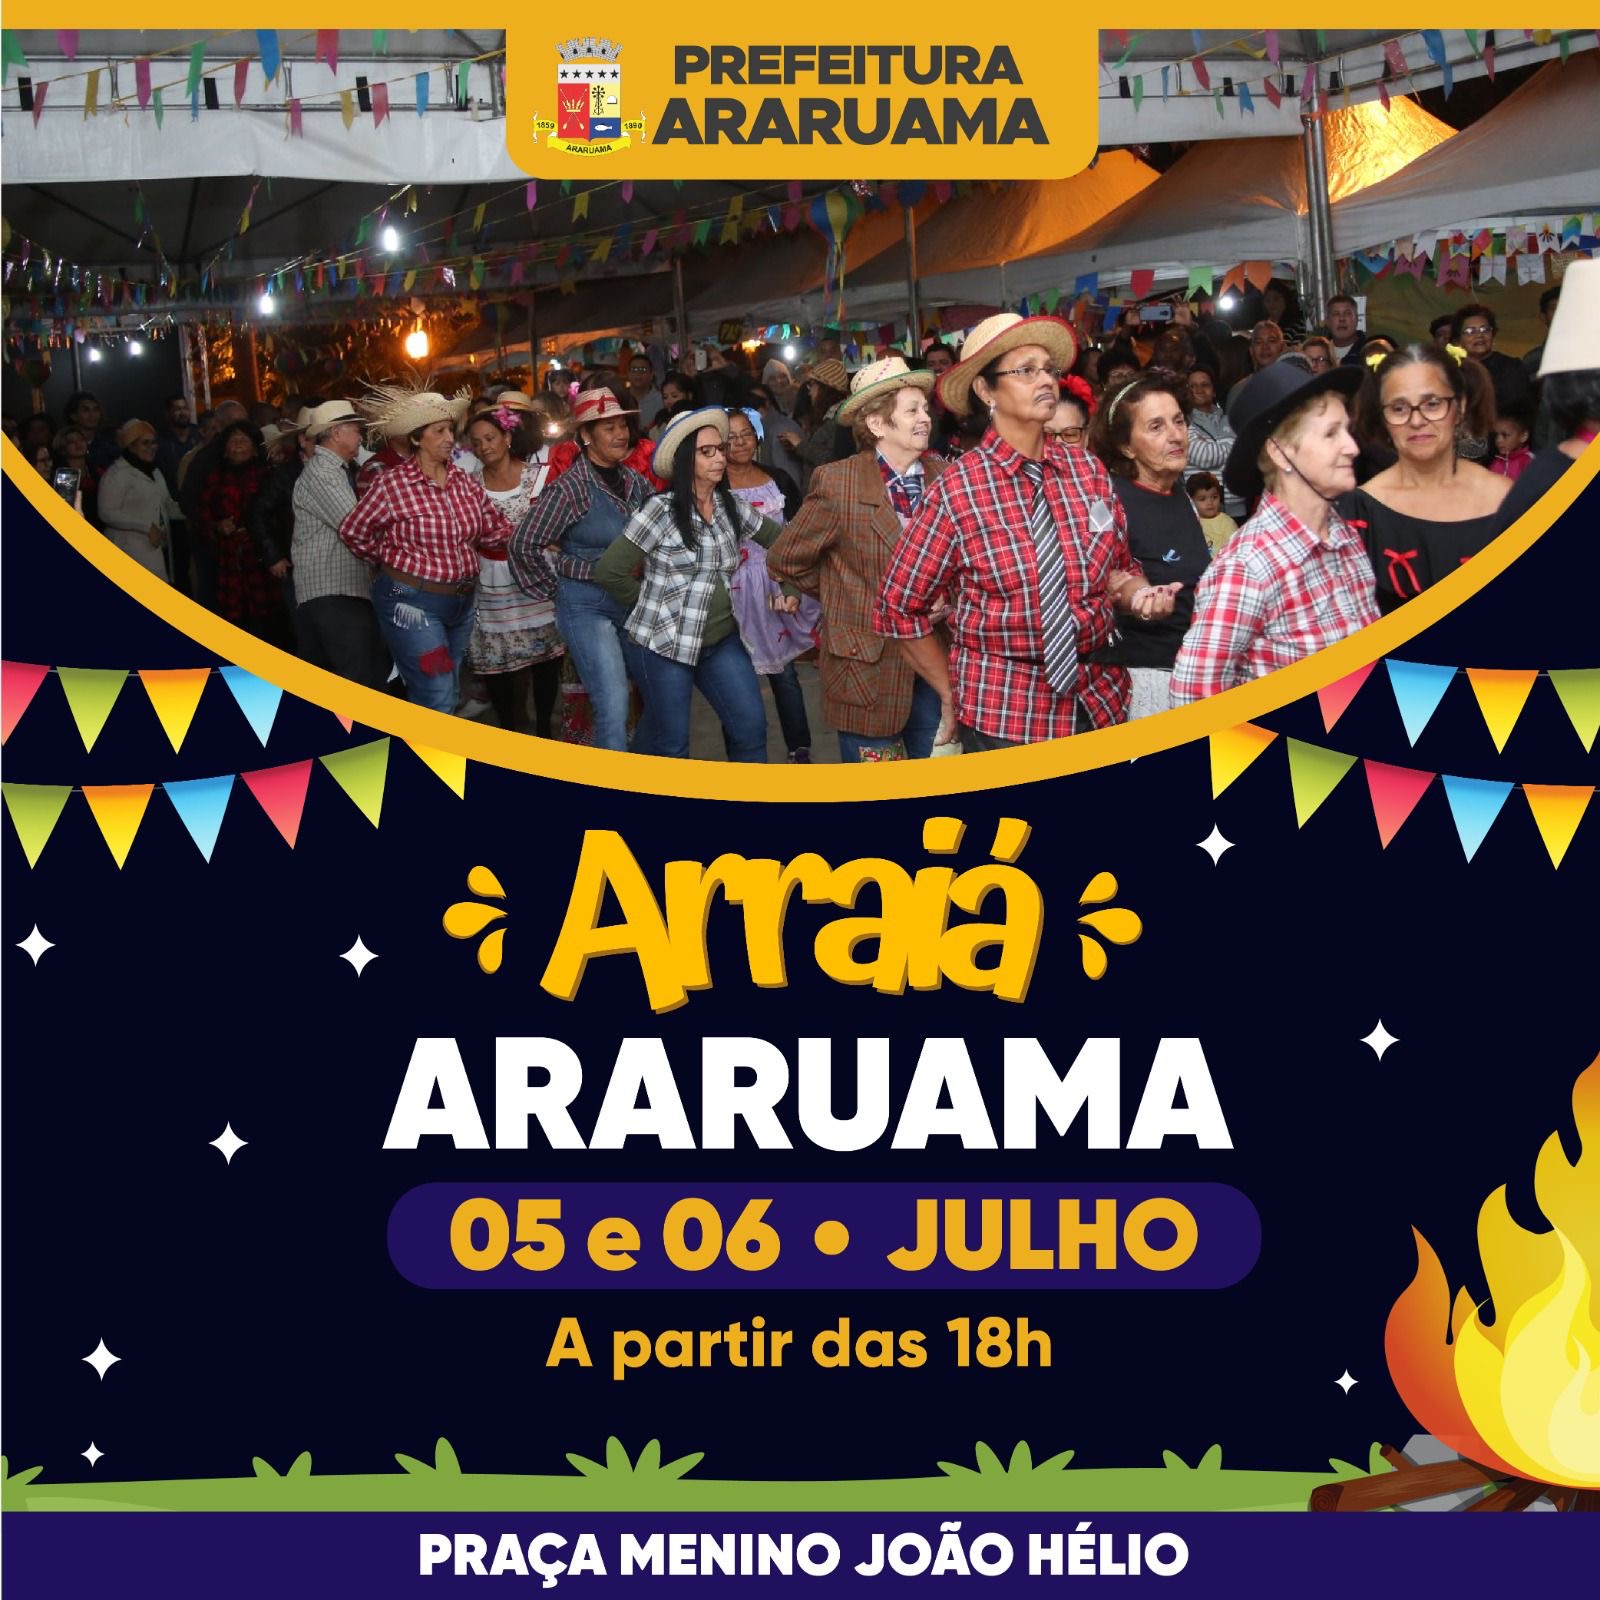 Prefeitura realiza o “Arraiá Araruama” com dois dias de festa